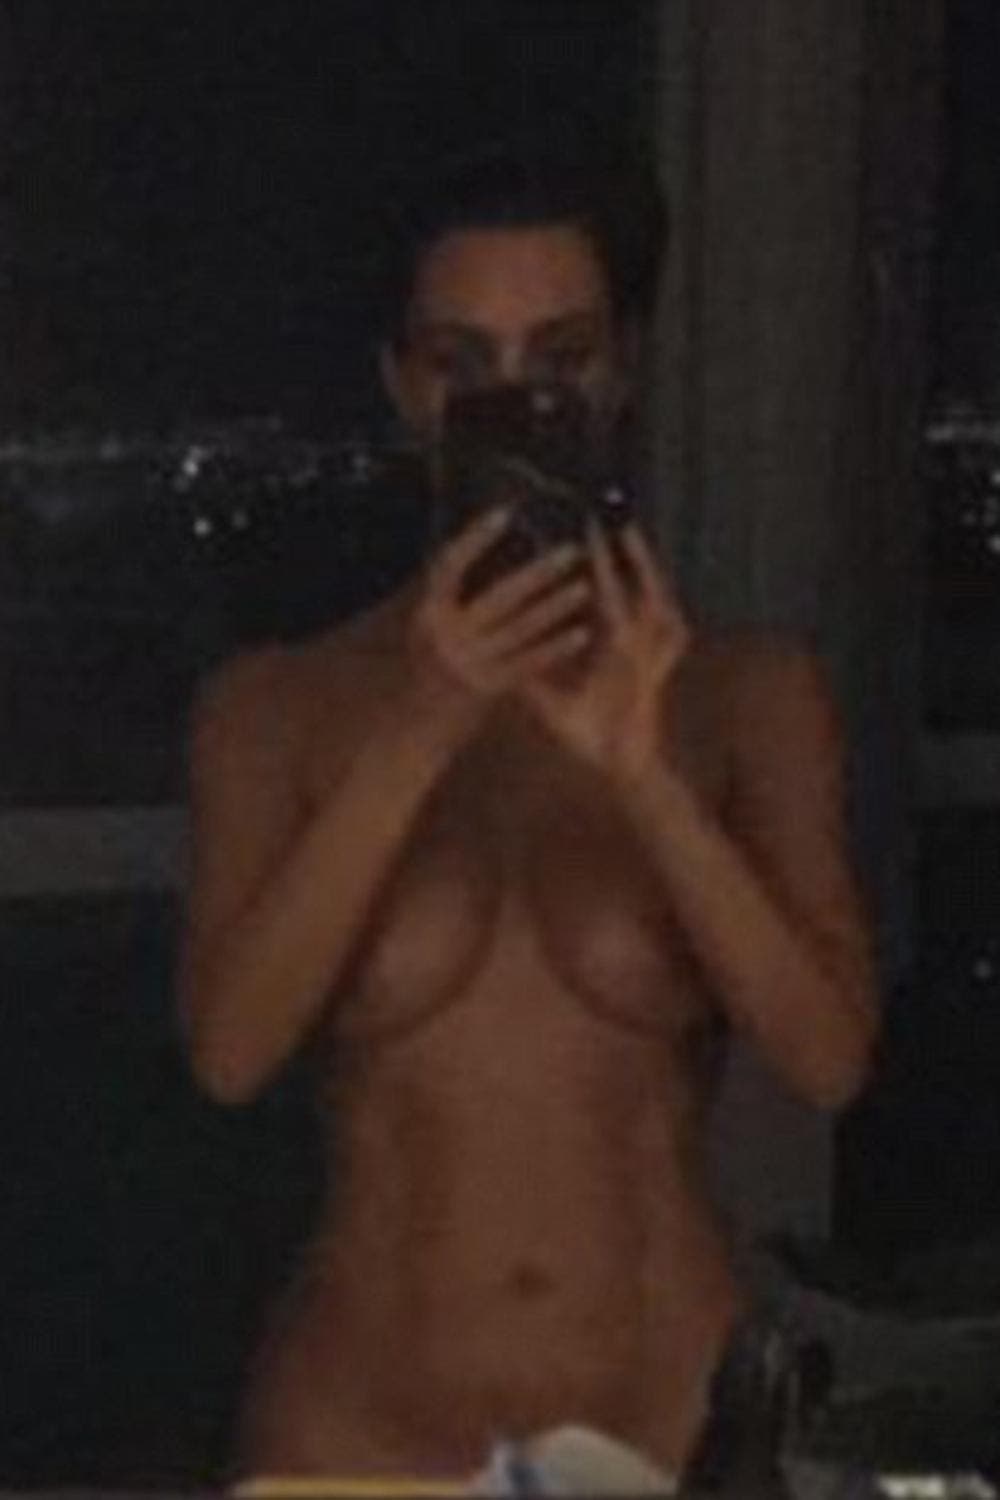 danielle raffa share naked kim kardashian uncensored photos